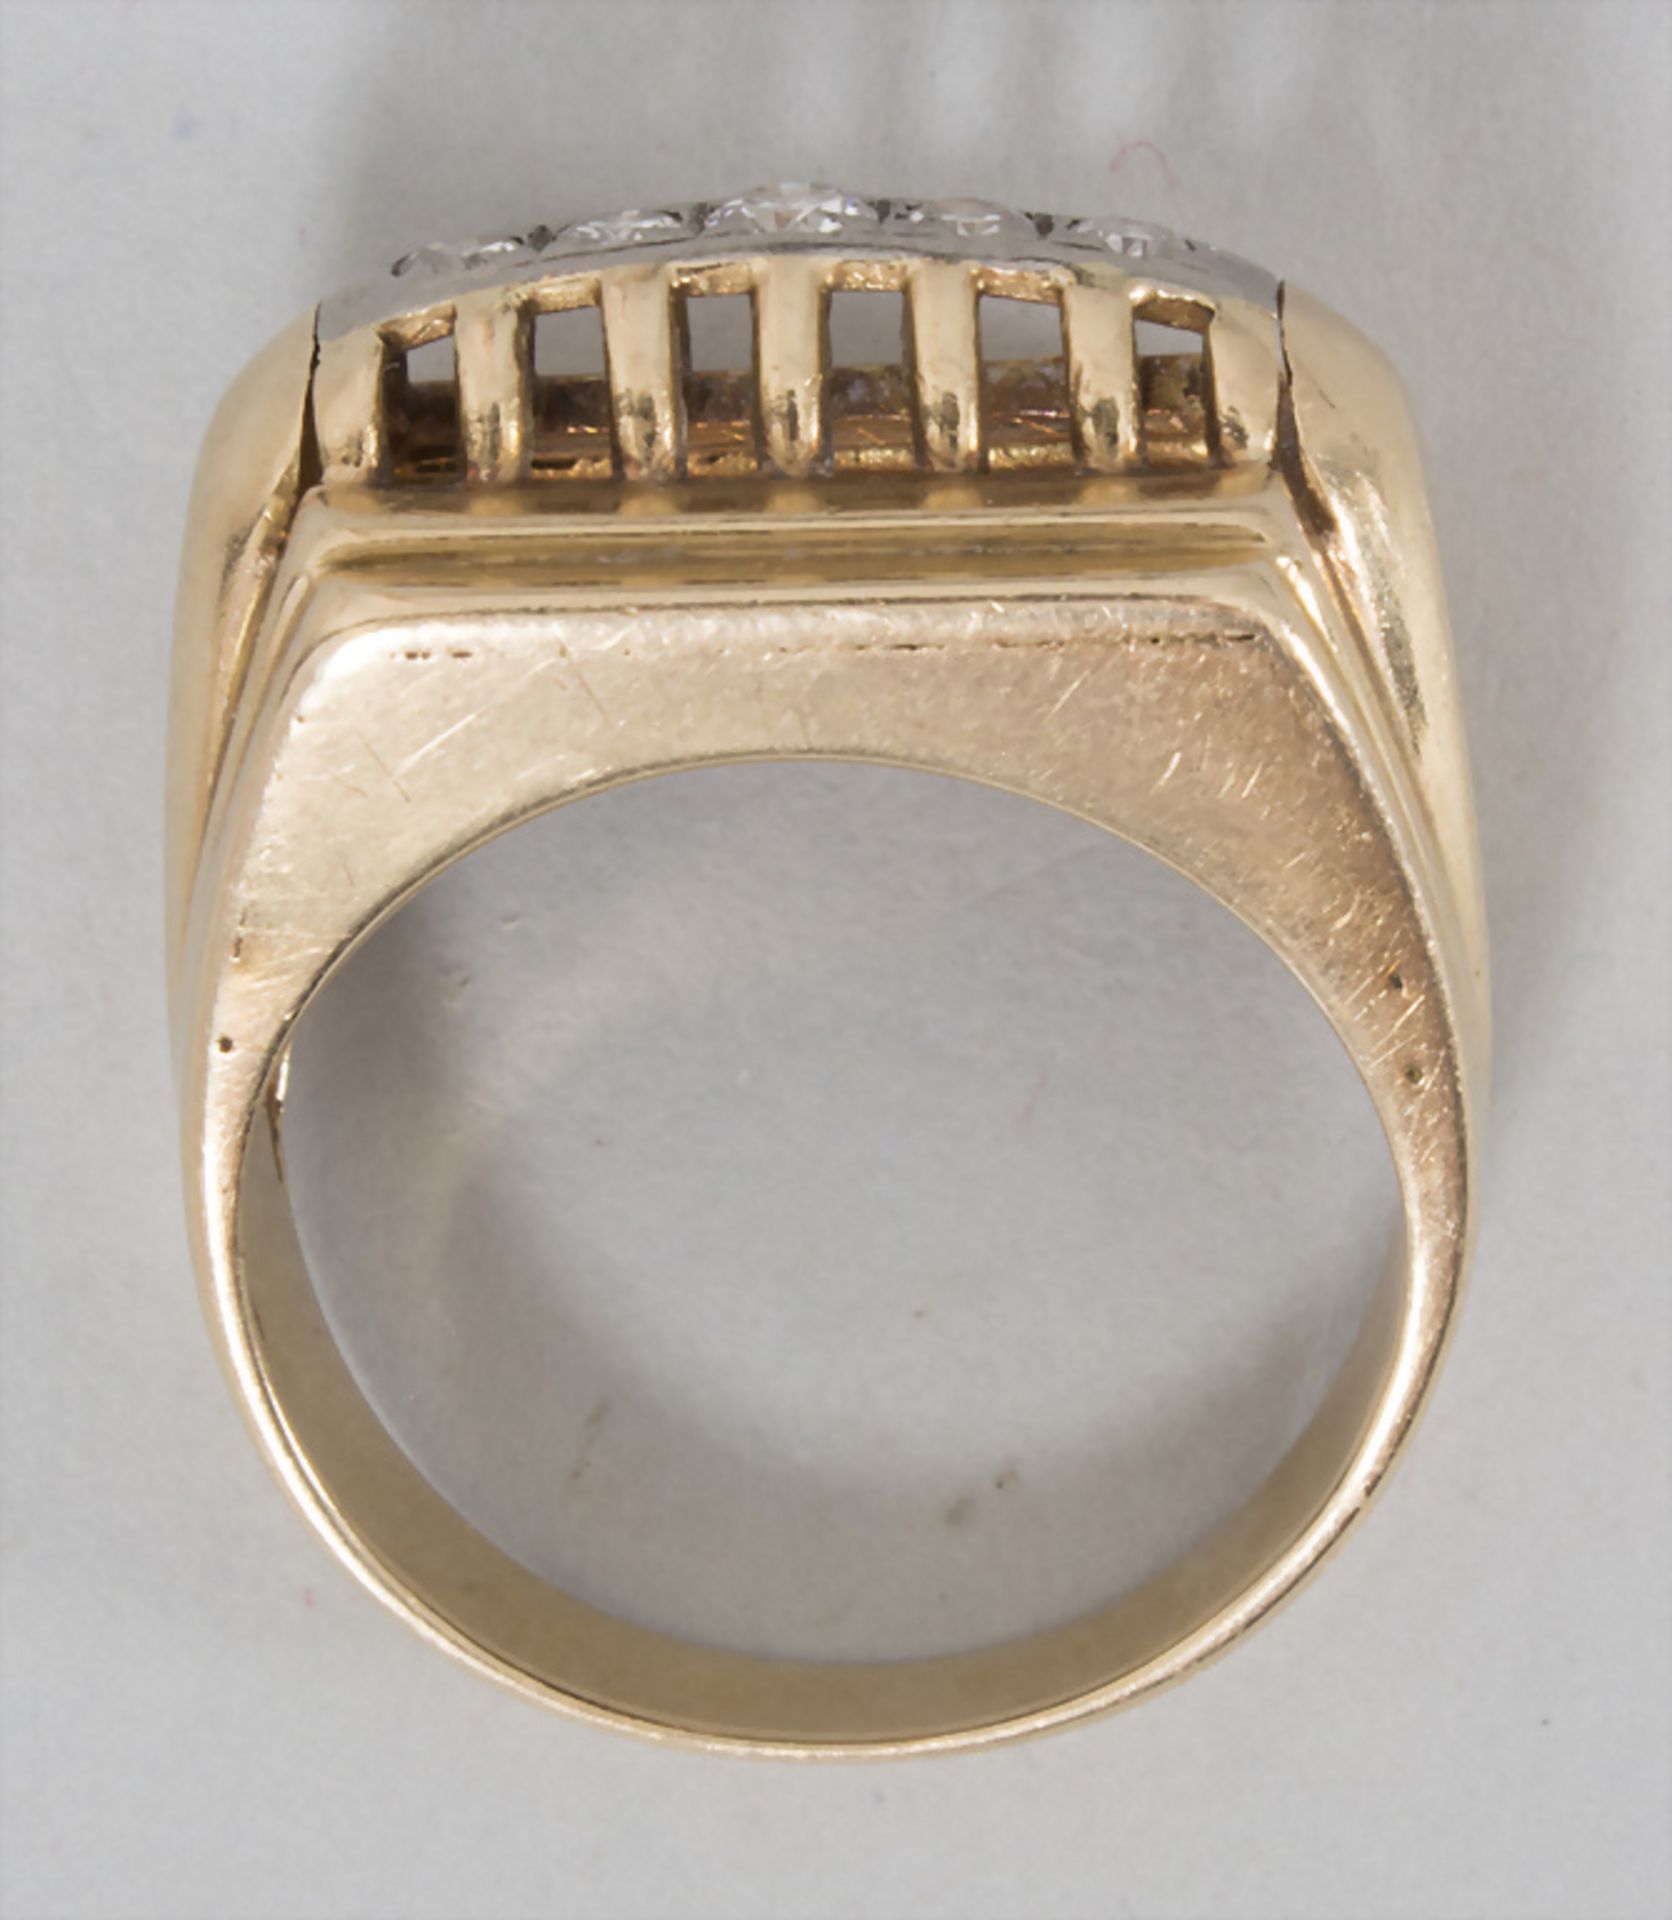 Damenring mit Diamanten / An 18 ct gold ladies ring with diamonds - Image 3 of 3